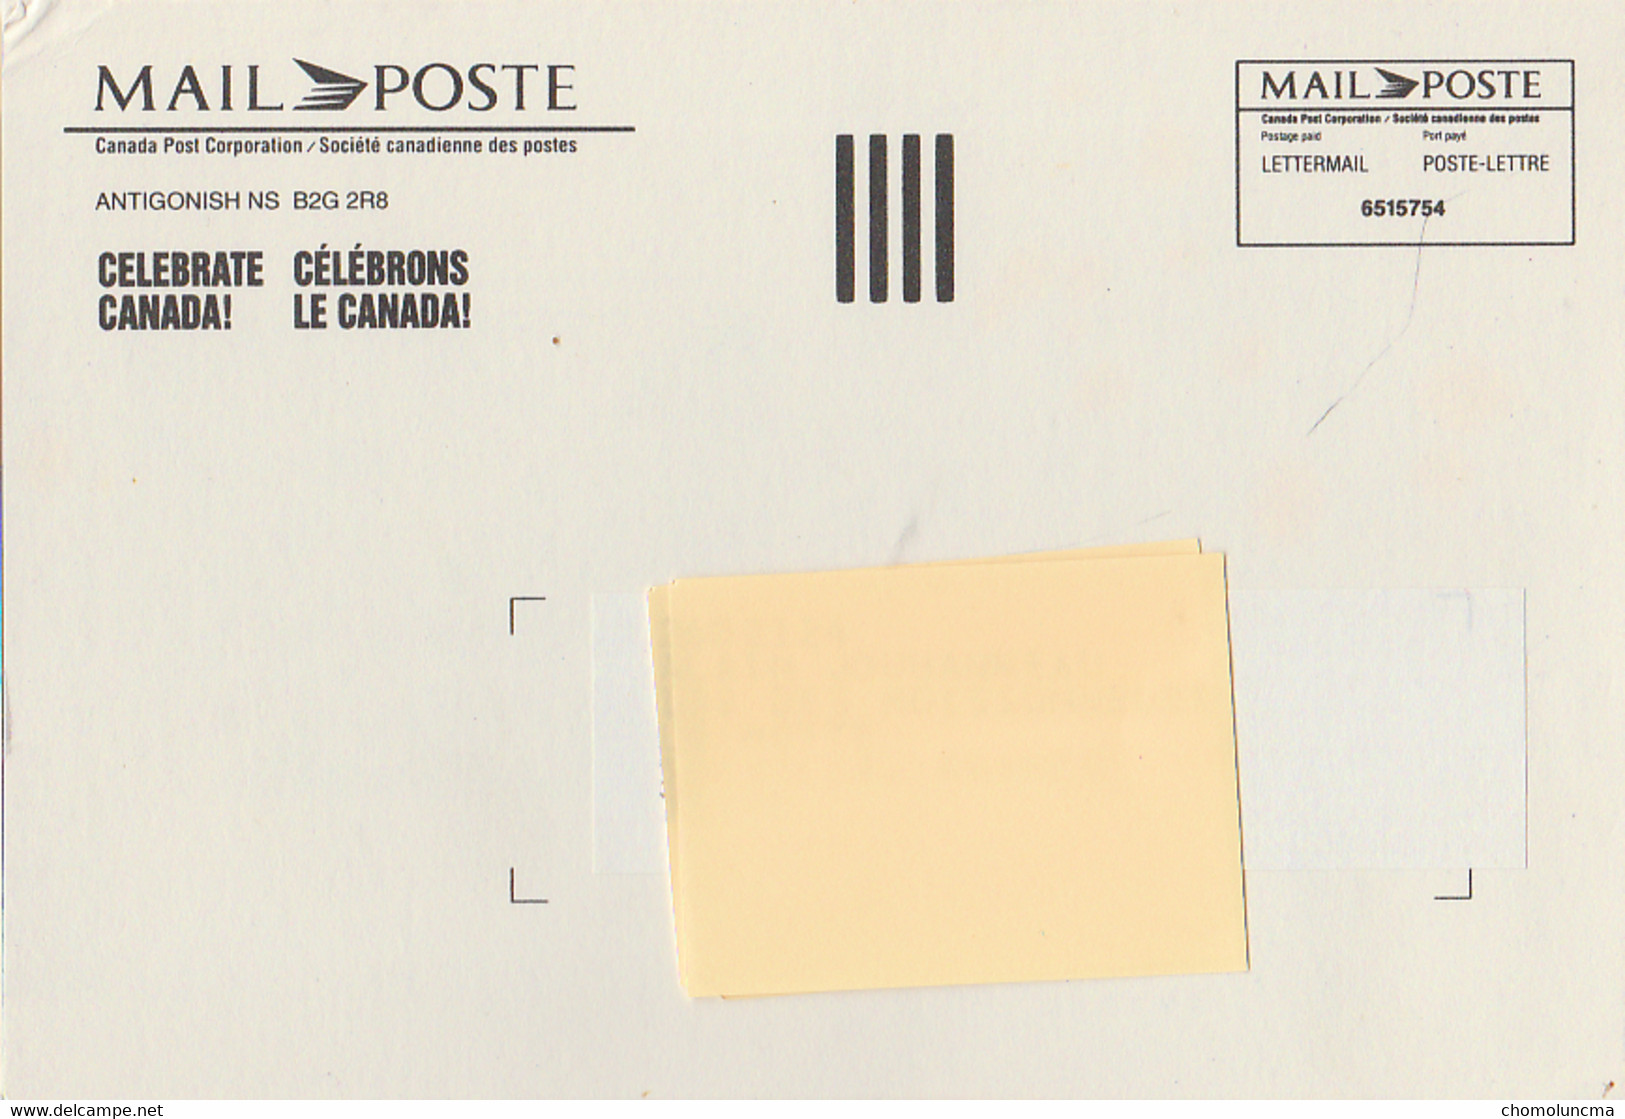 1992 Canada Post Letter Mail Presenting Poste Lettre En Primeur Celebrate Célébrons Le Canada Day Fête - Postal History